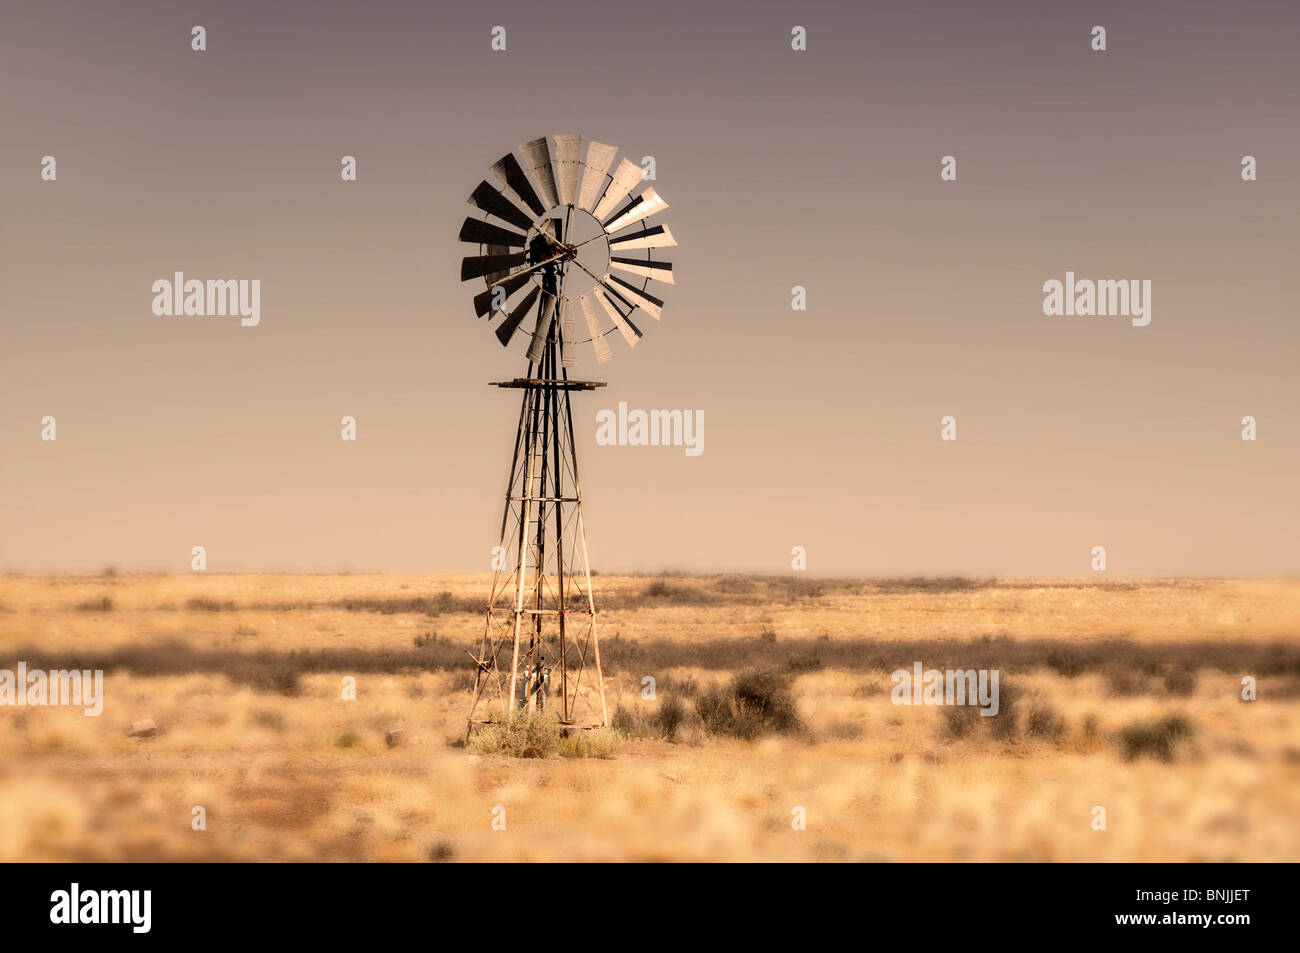 Wind wheel field near Brandvlei Northern Cape South Africa landscape scenery Stock Photo